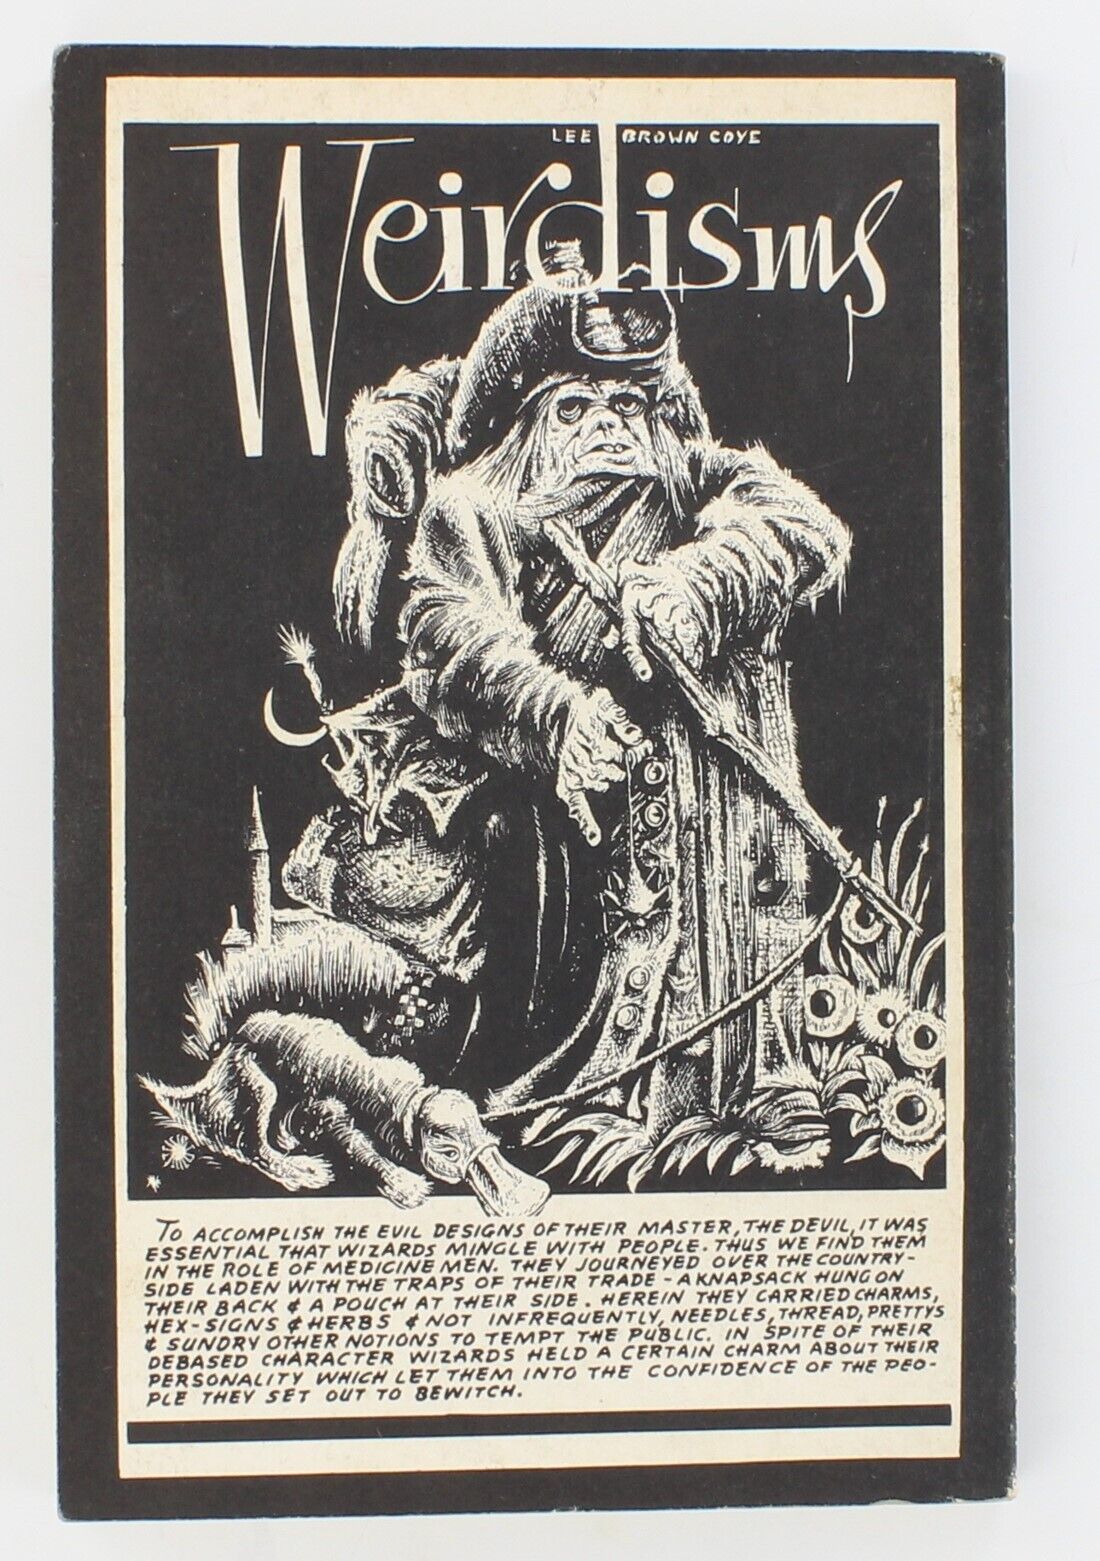 WT50 Tribute to Weird Tales 1974 Robert Weinberg Zine Weirdism Robert E Howard